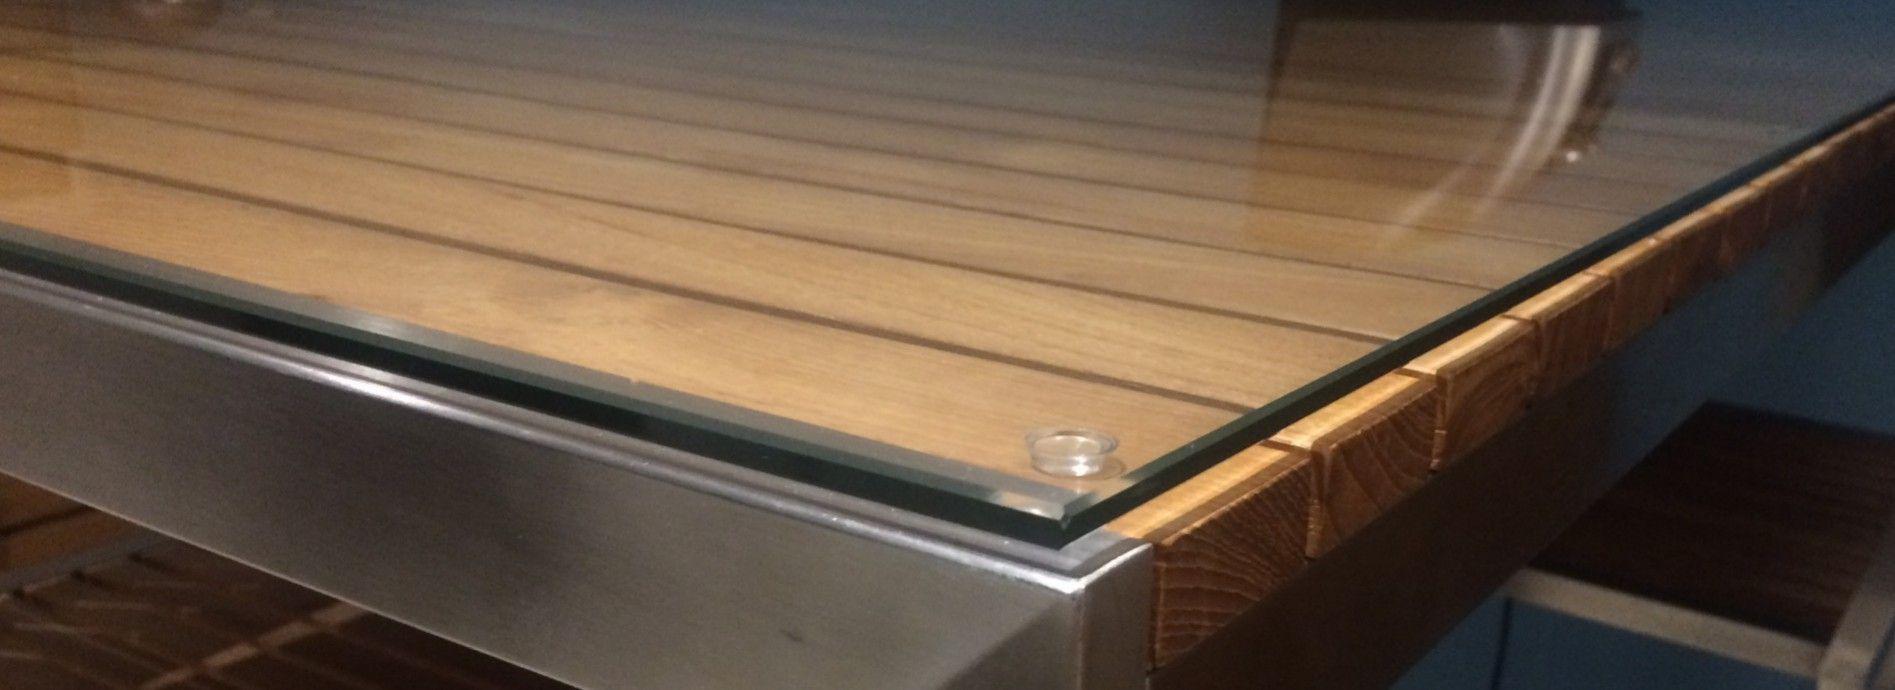 Protection de table en verre trempé clair - Toutverre